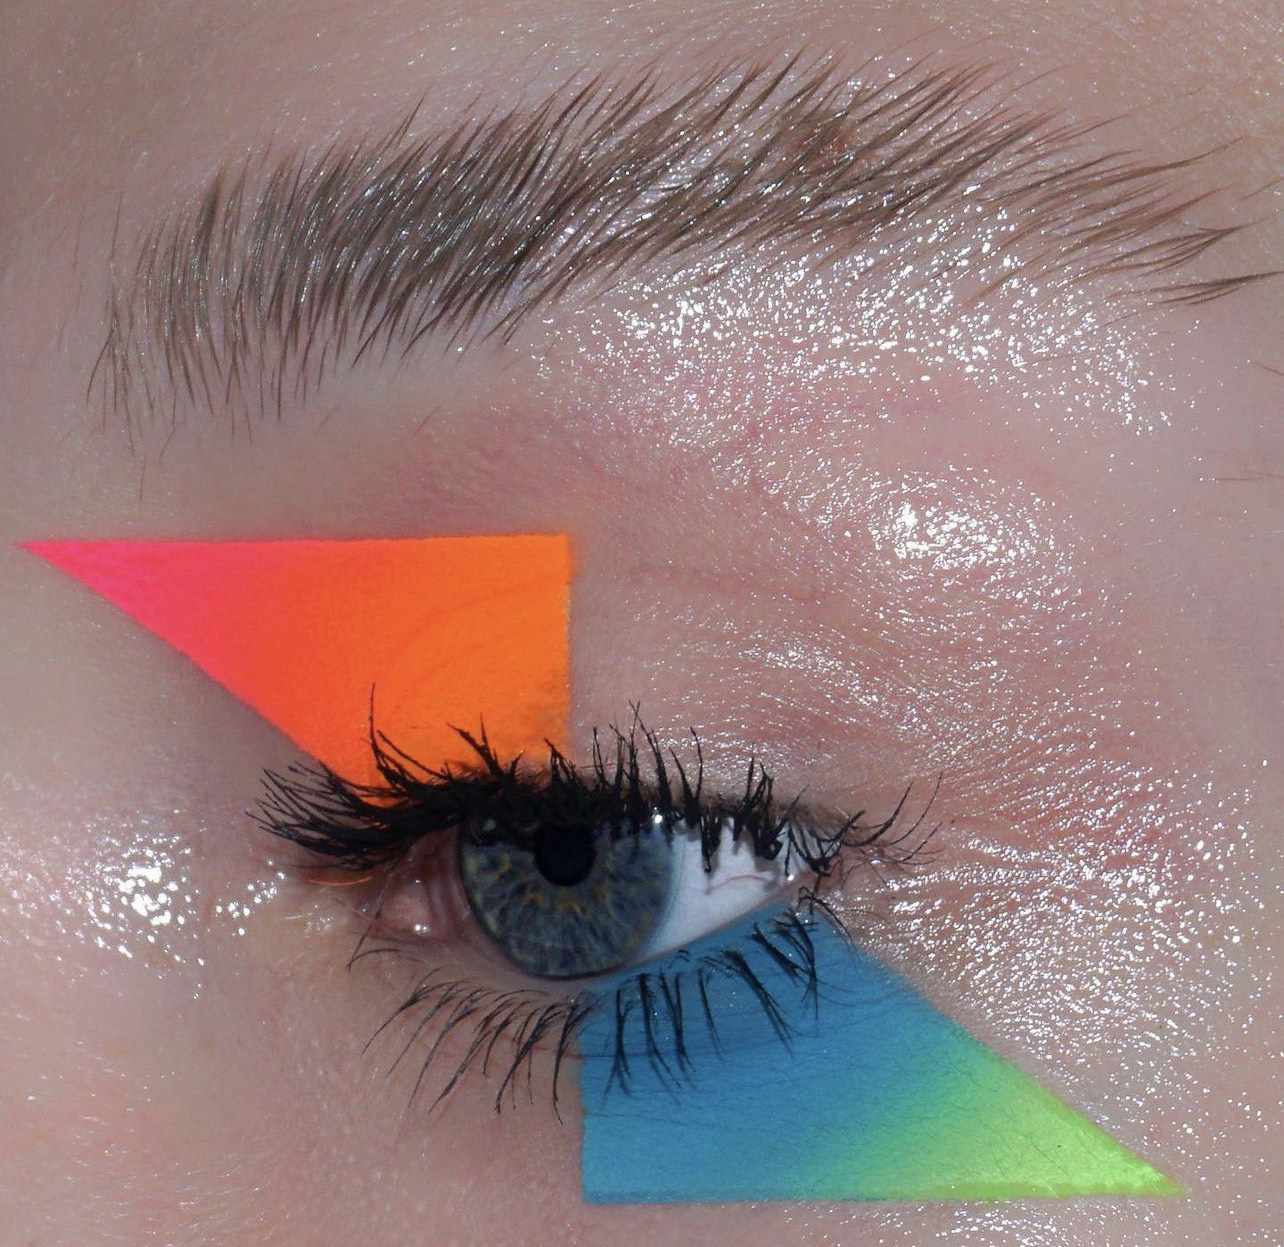 Sombras gráficas neon em tons de néon laranja, rosa, azul e verde na forma de um triângulo agudo acima e sob o olho foram aplicados às pálpebras